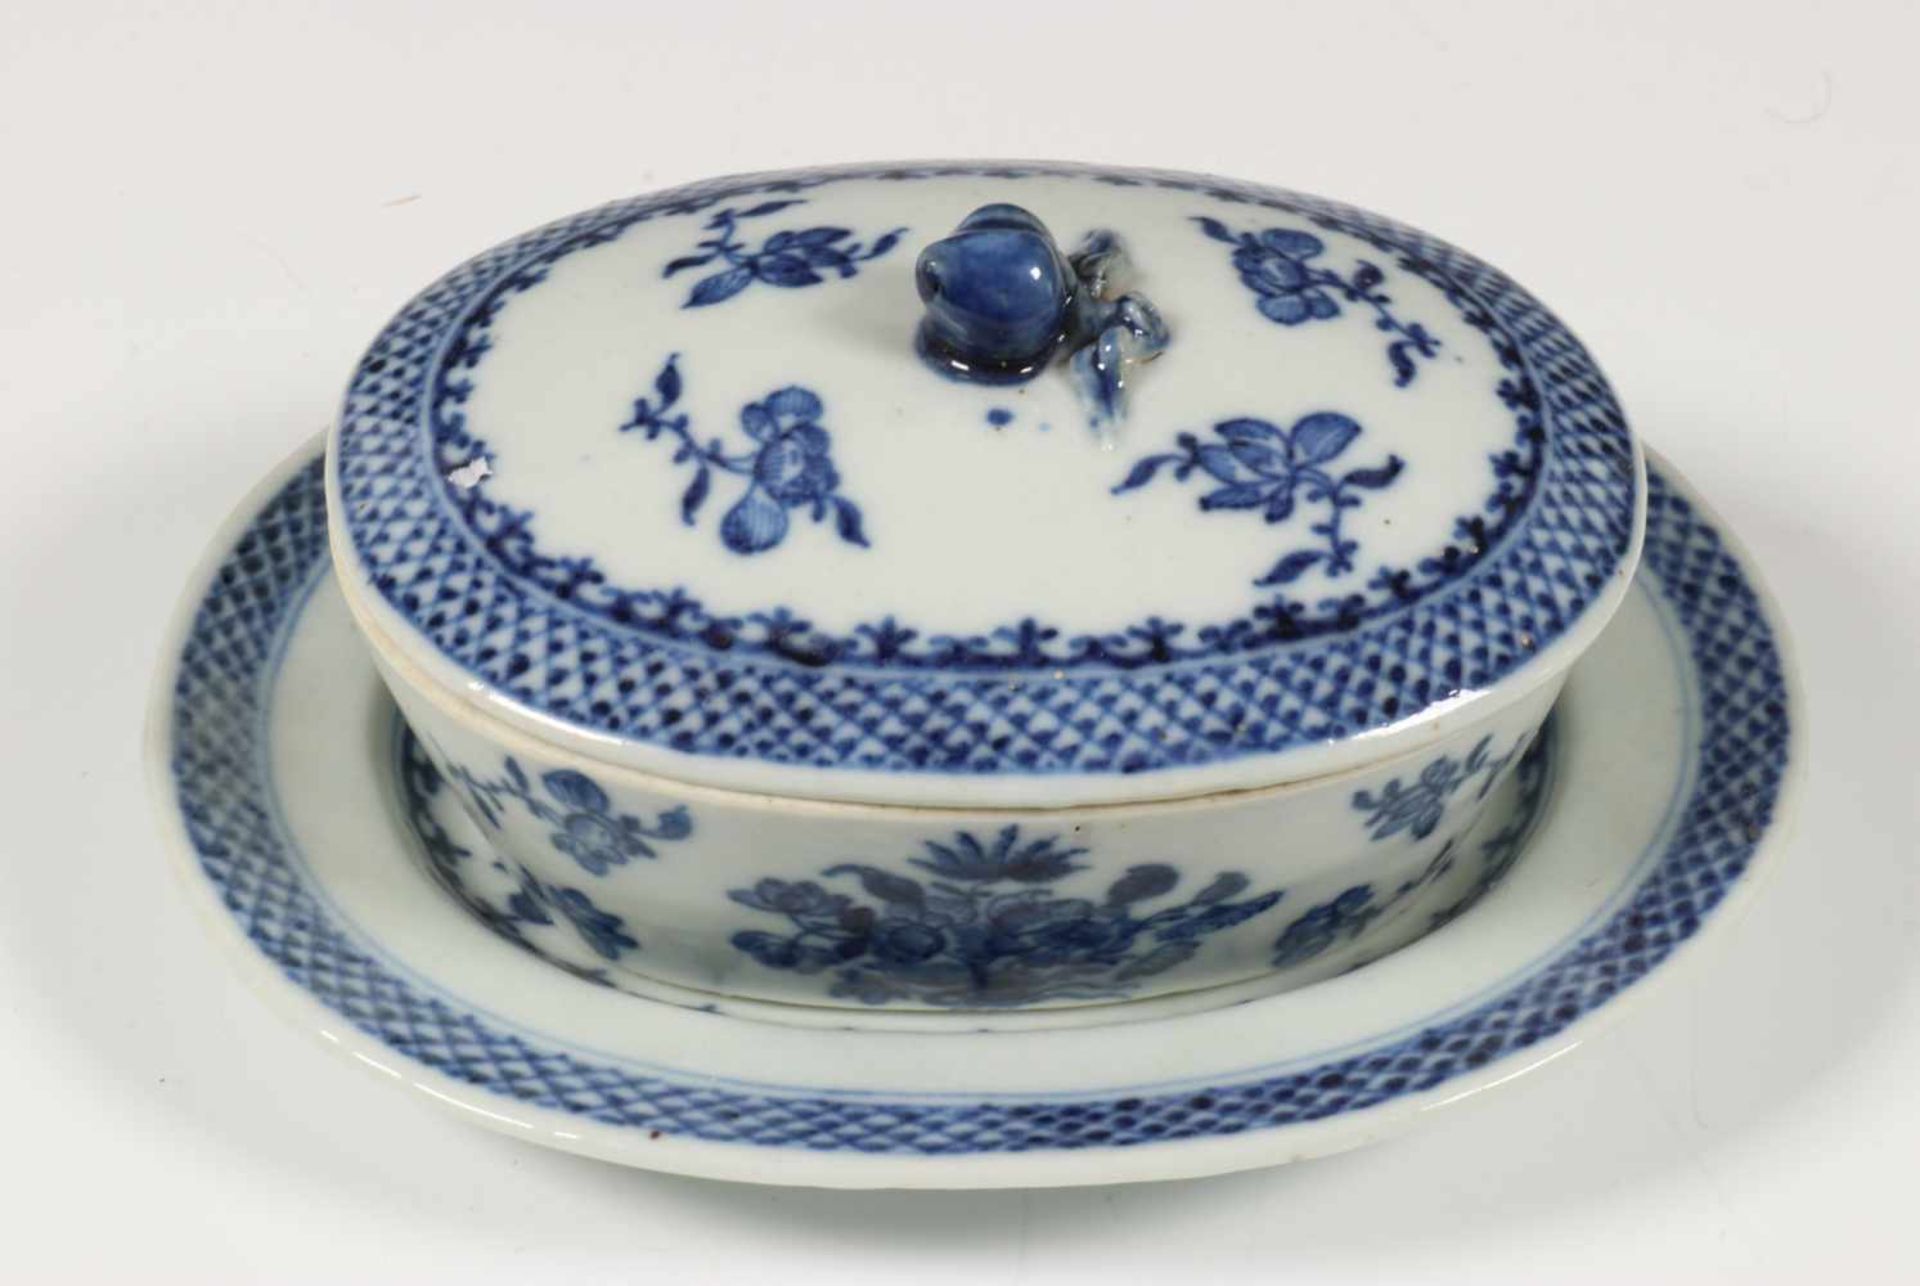 China, blauw-wit porseleinen botervloot, deksel en schotel, ca. 1800,gedecoreerd met bloemen , l.